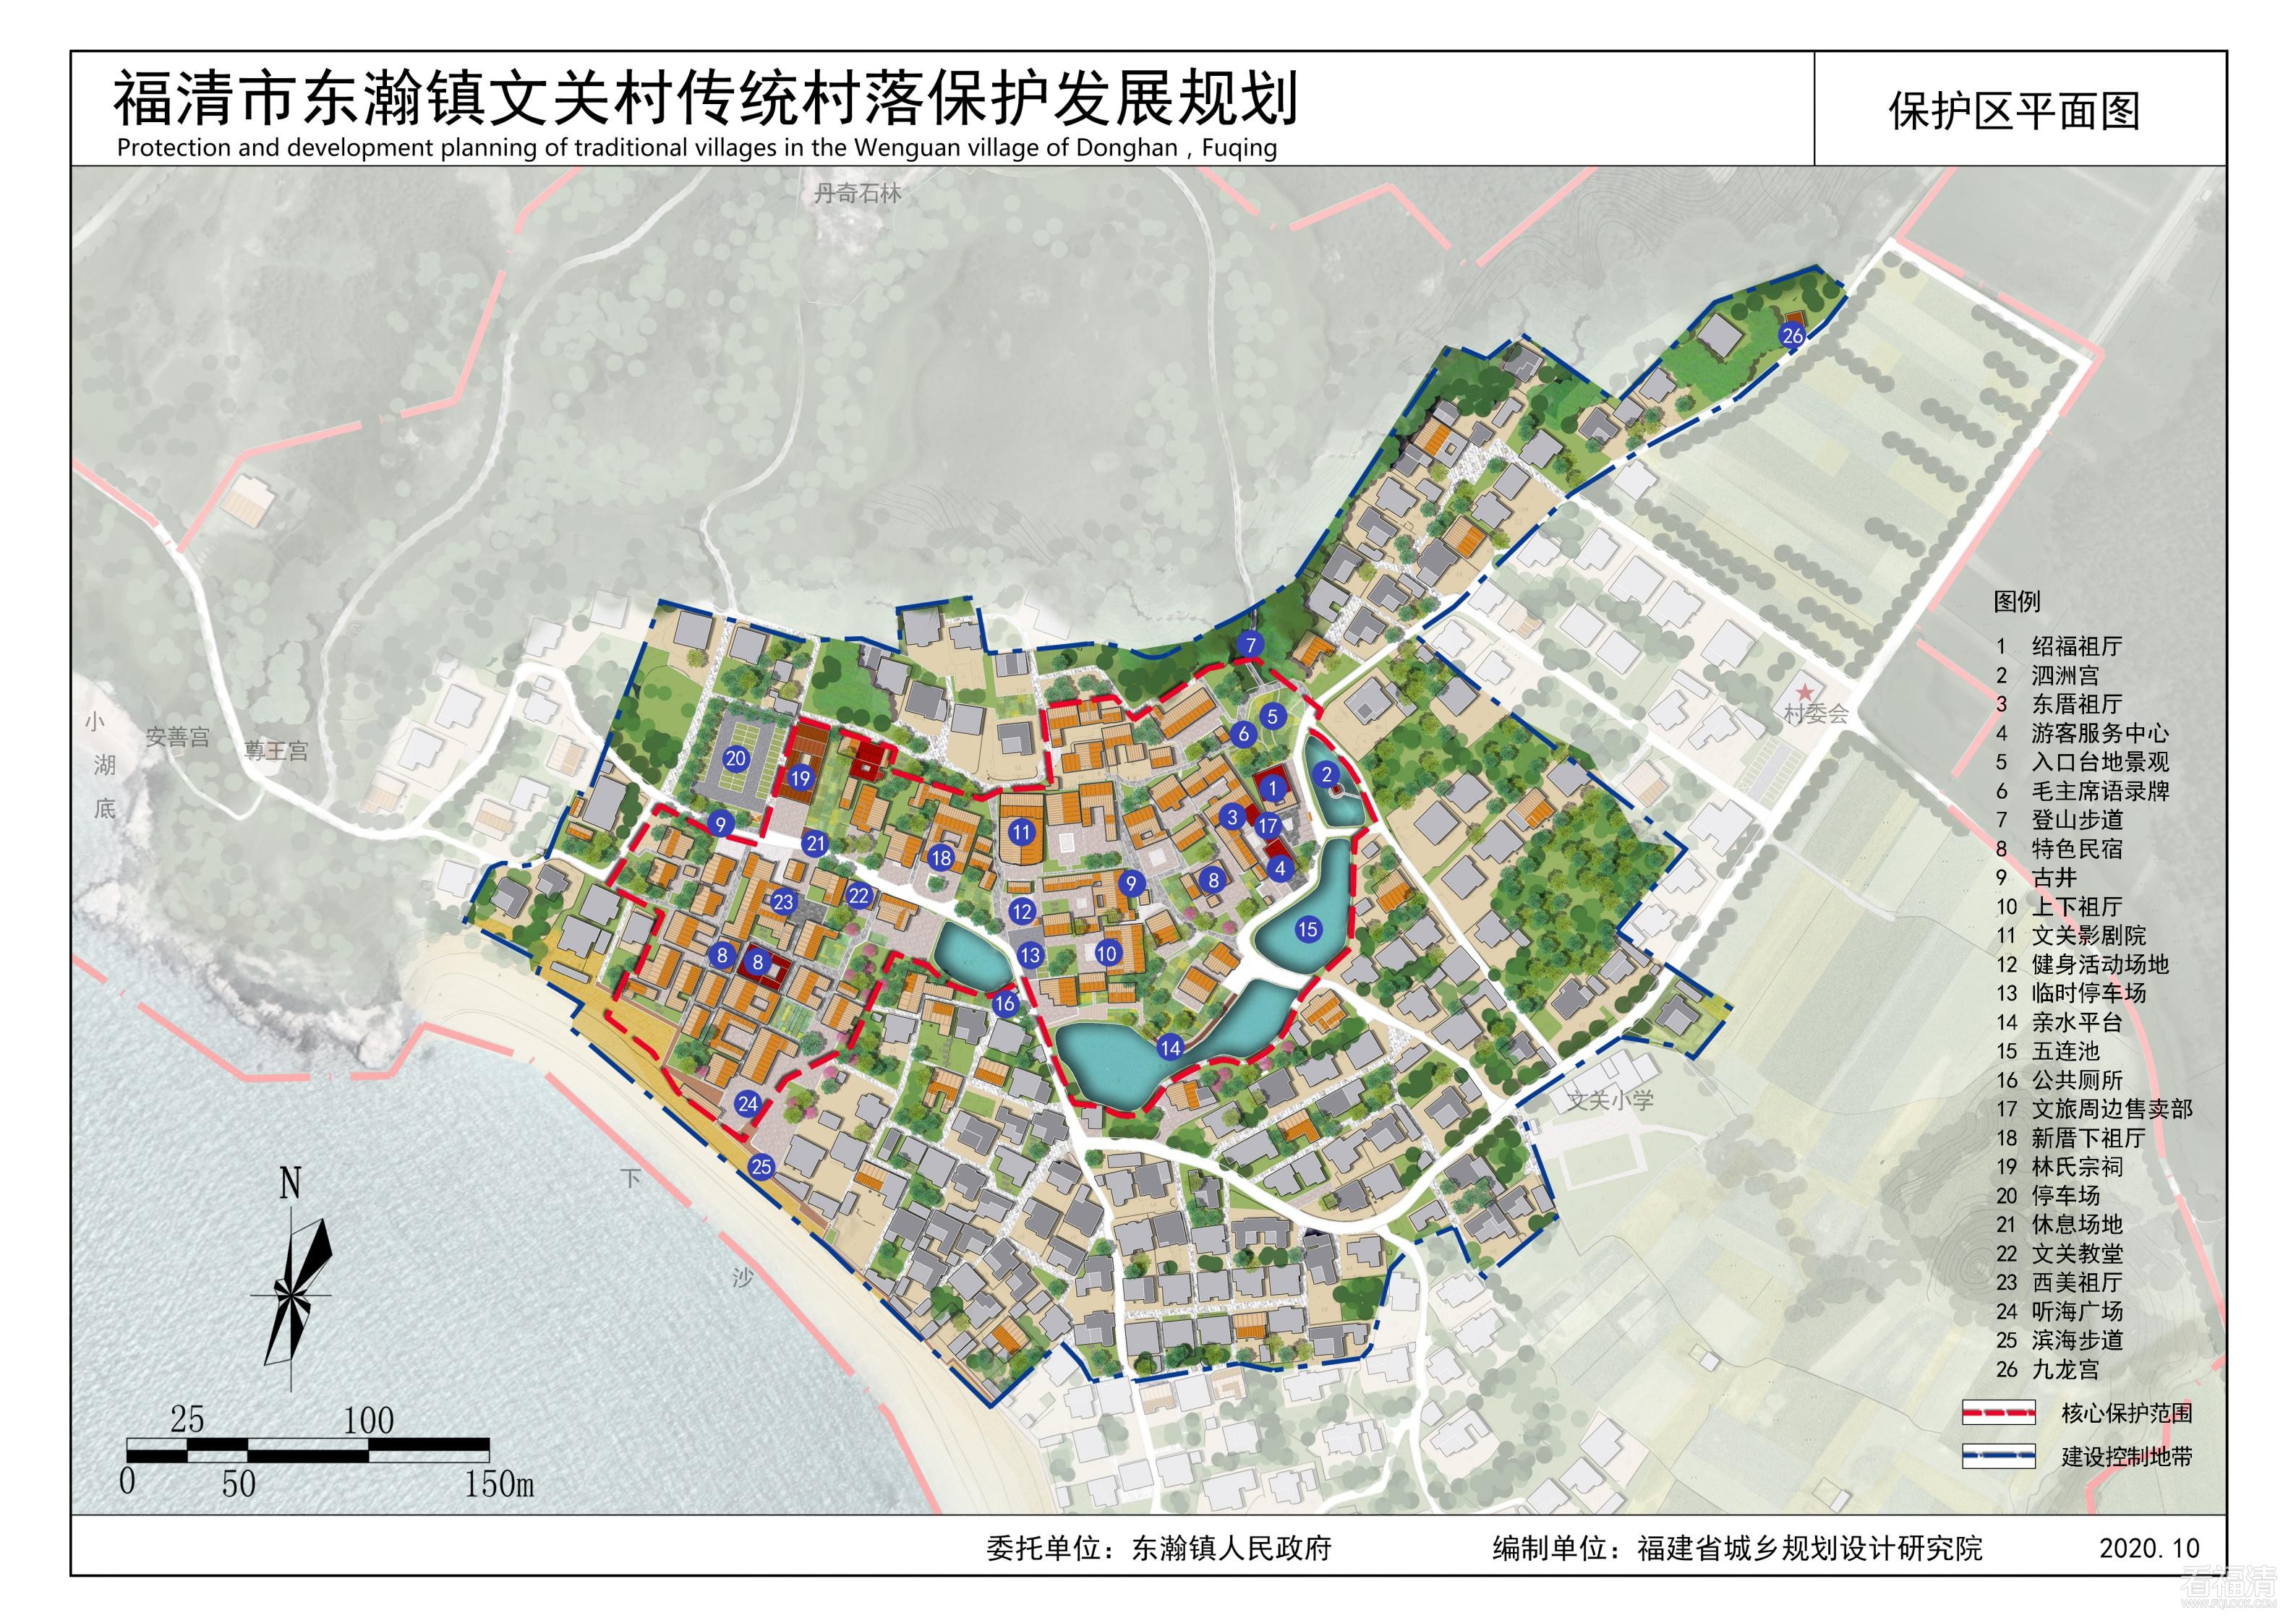 《福清市东瀚镇文关村传统村落保护发展规划（2020-2035年）》_01.jpg